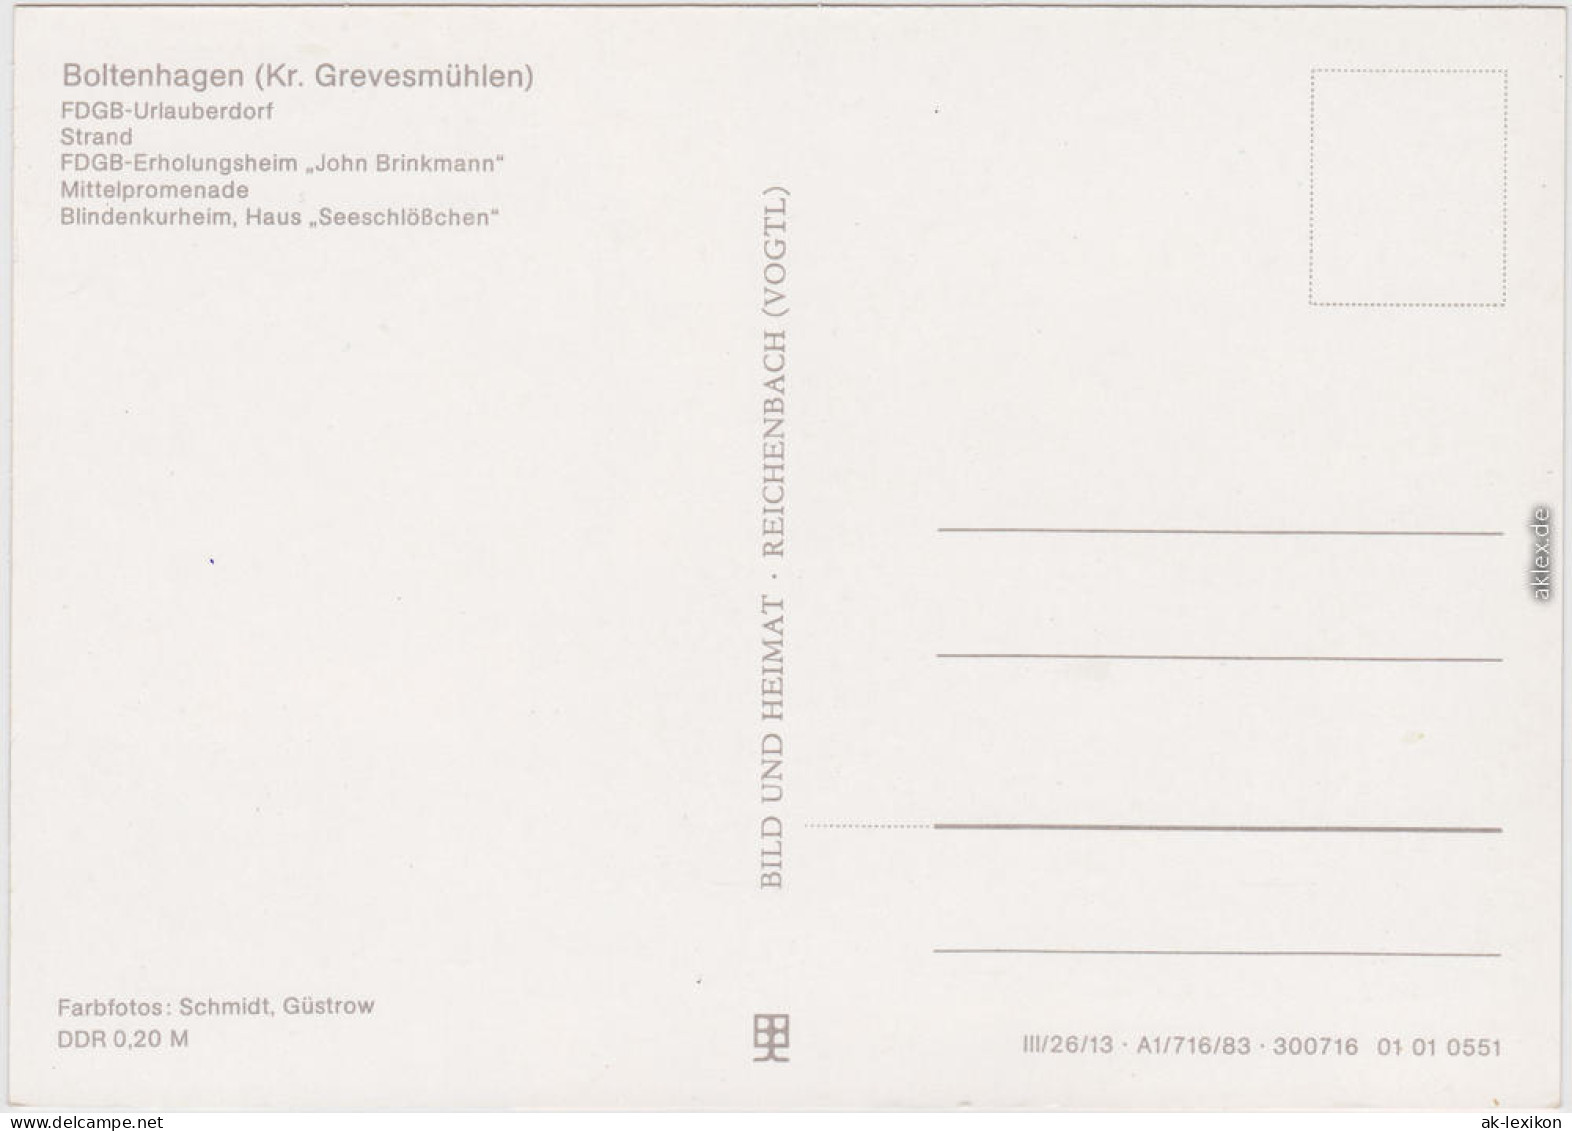 Boltenhagen FDGB-Urlauberdorf, Strand, FDGB-Erholungsheim "John Brinkmann 1983 - Boltenhagen